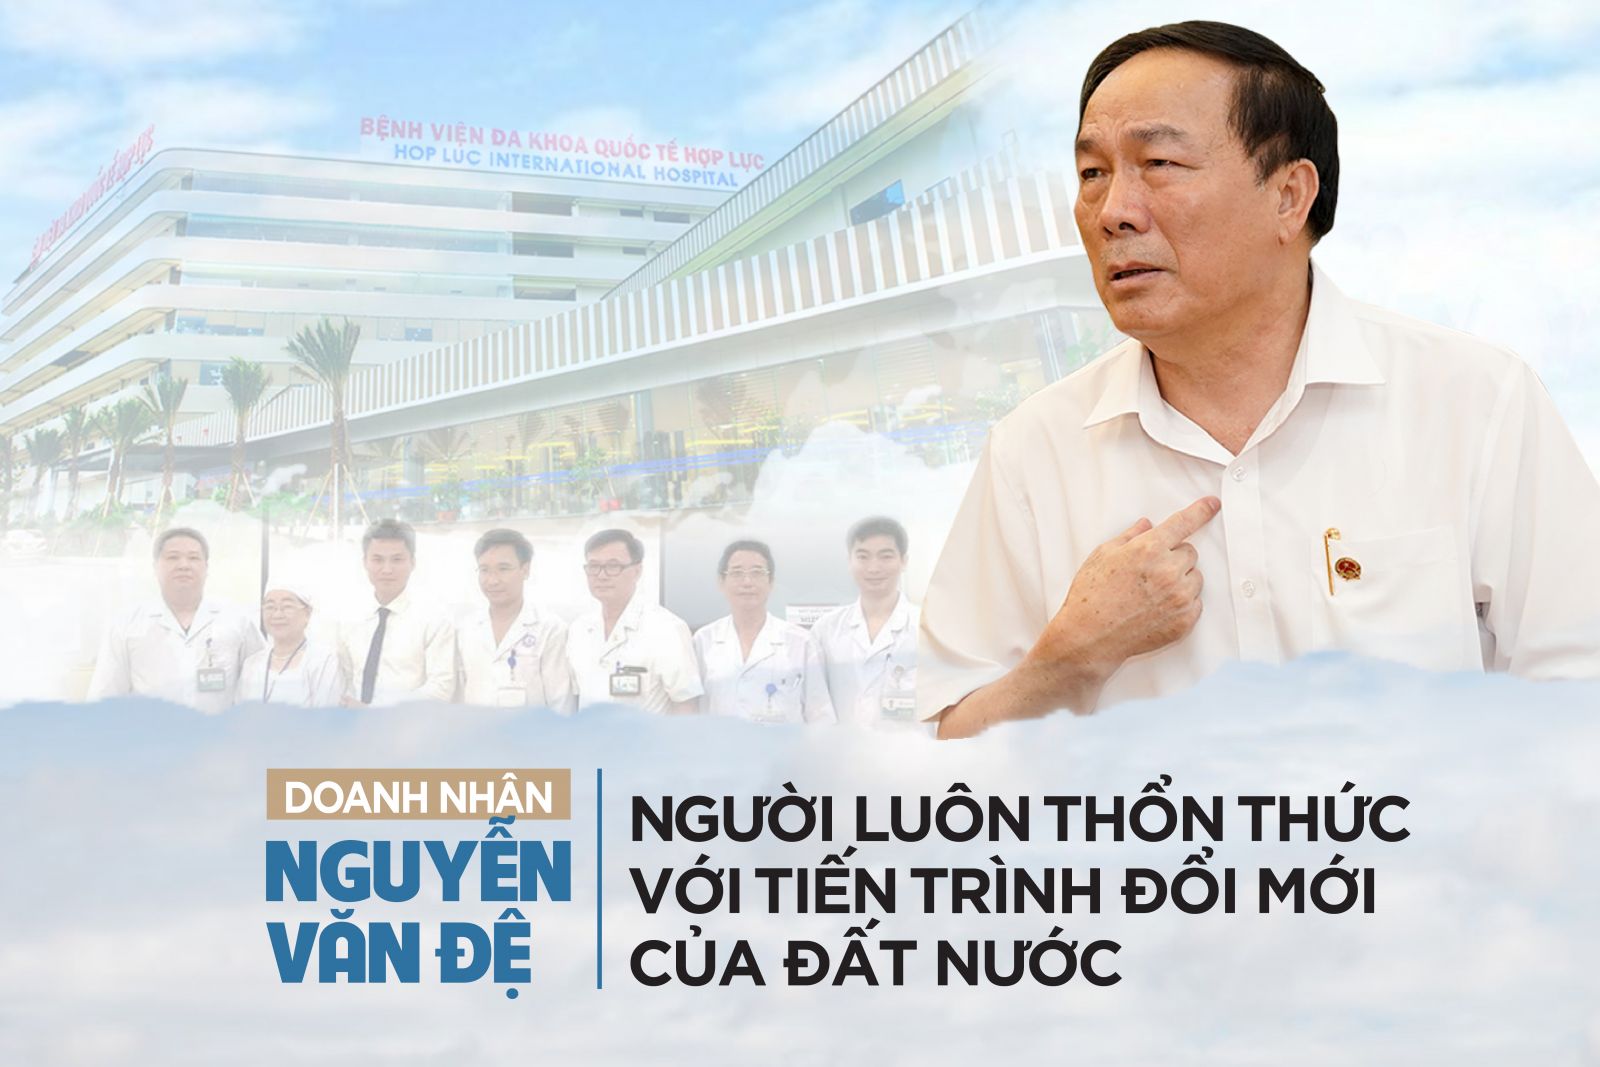 Doanh nhân Nguyễn Văn Đệ: Người luôn thổn thức với tiến trình đổi mới của đất nước